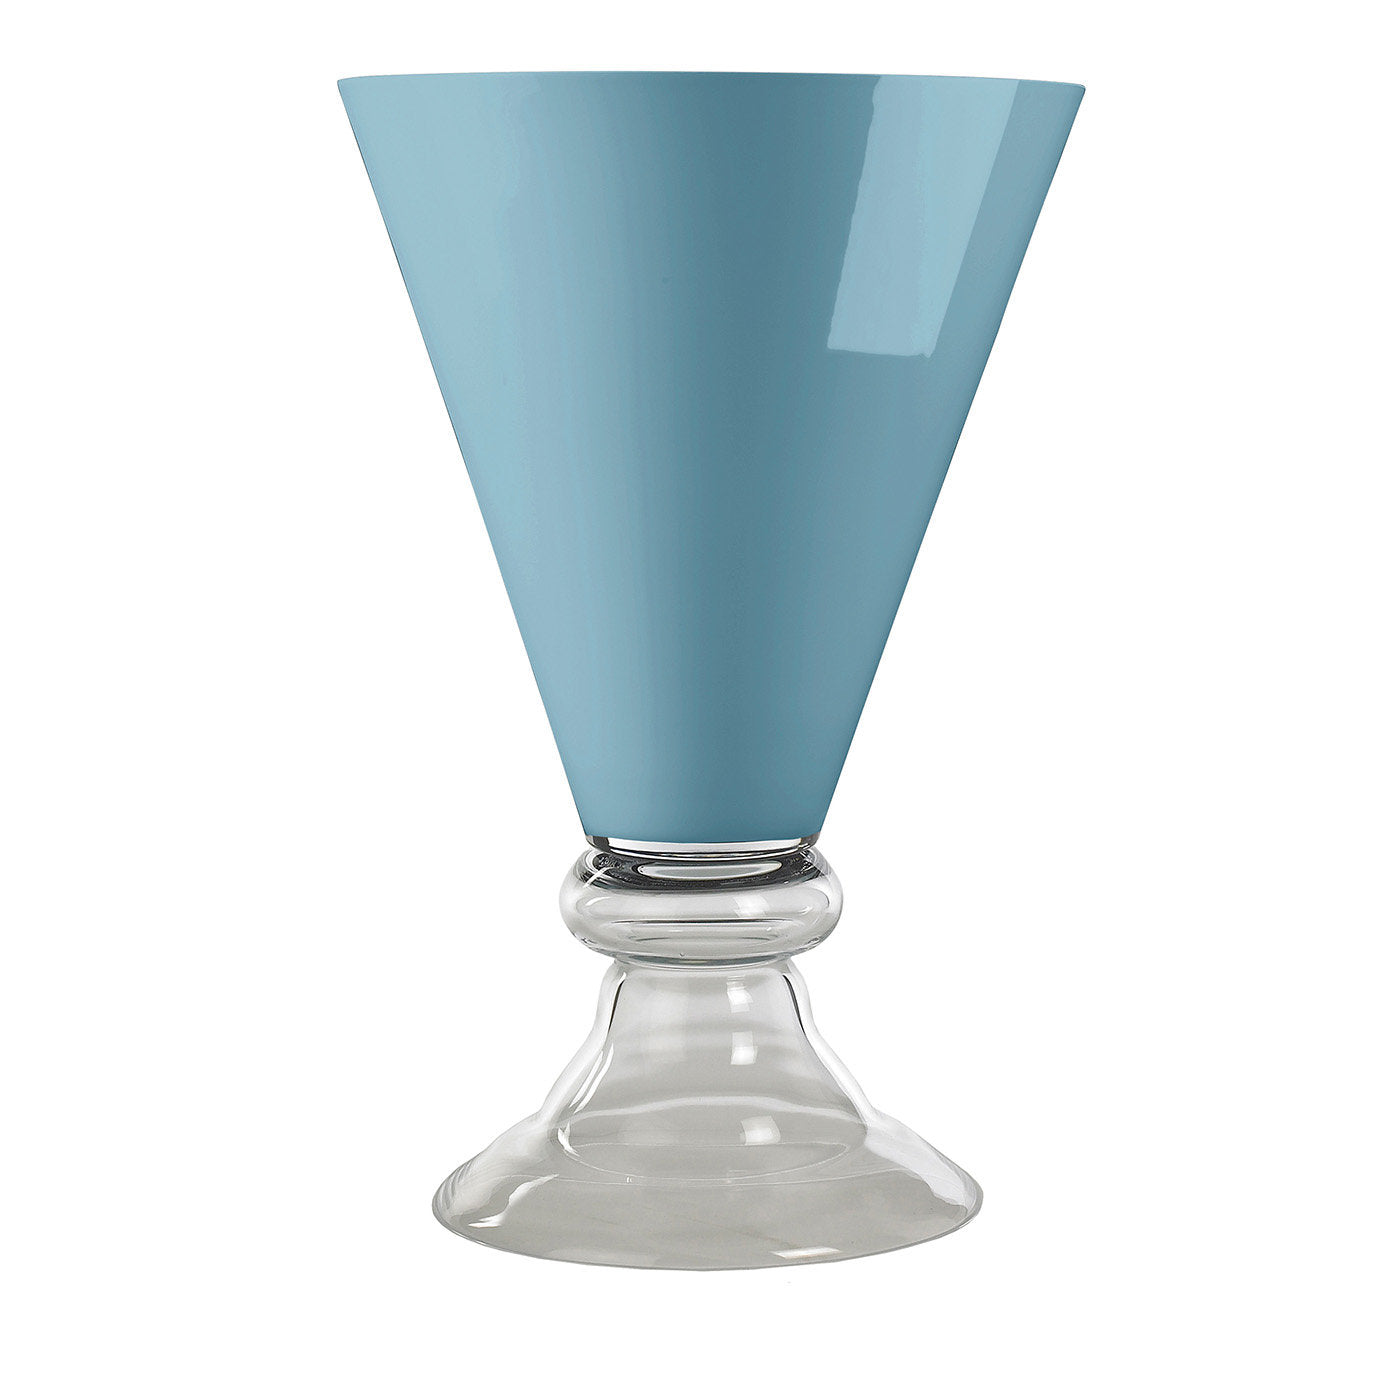 Nouveau vase romantique bleu - Vue principale